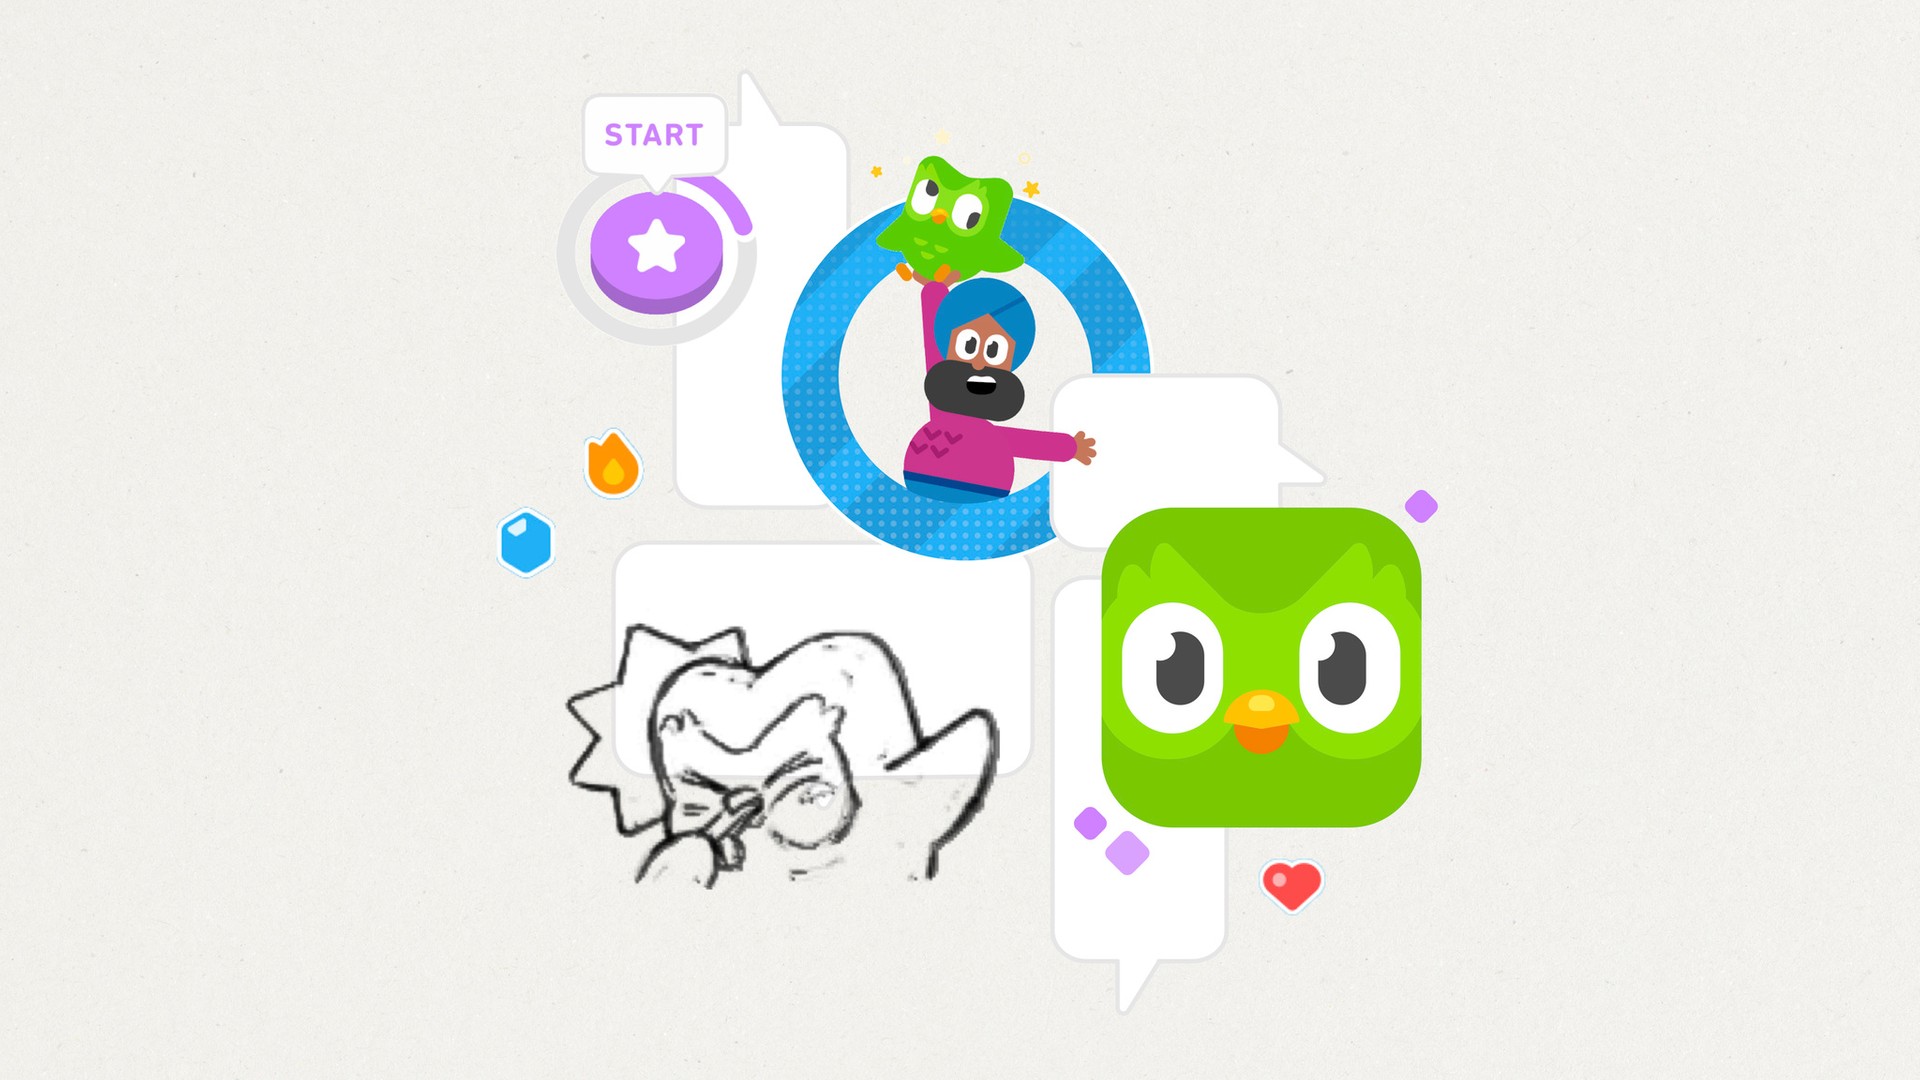 Duolingo lança aplicativo para ensino de matemática - Época Negócios